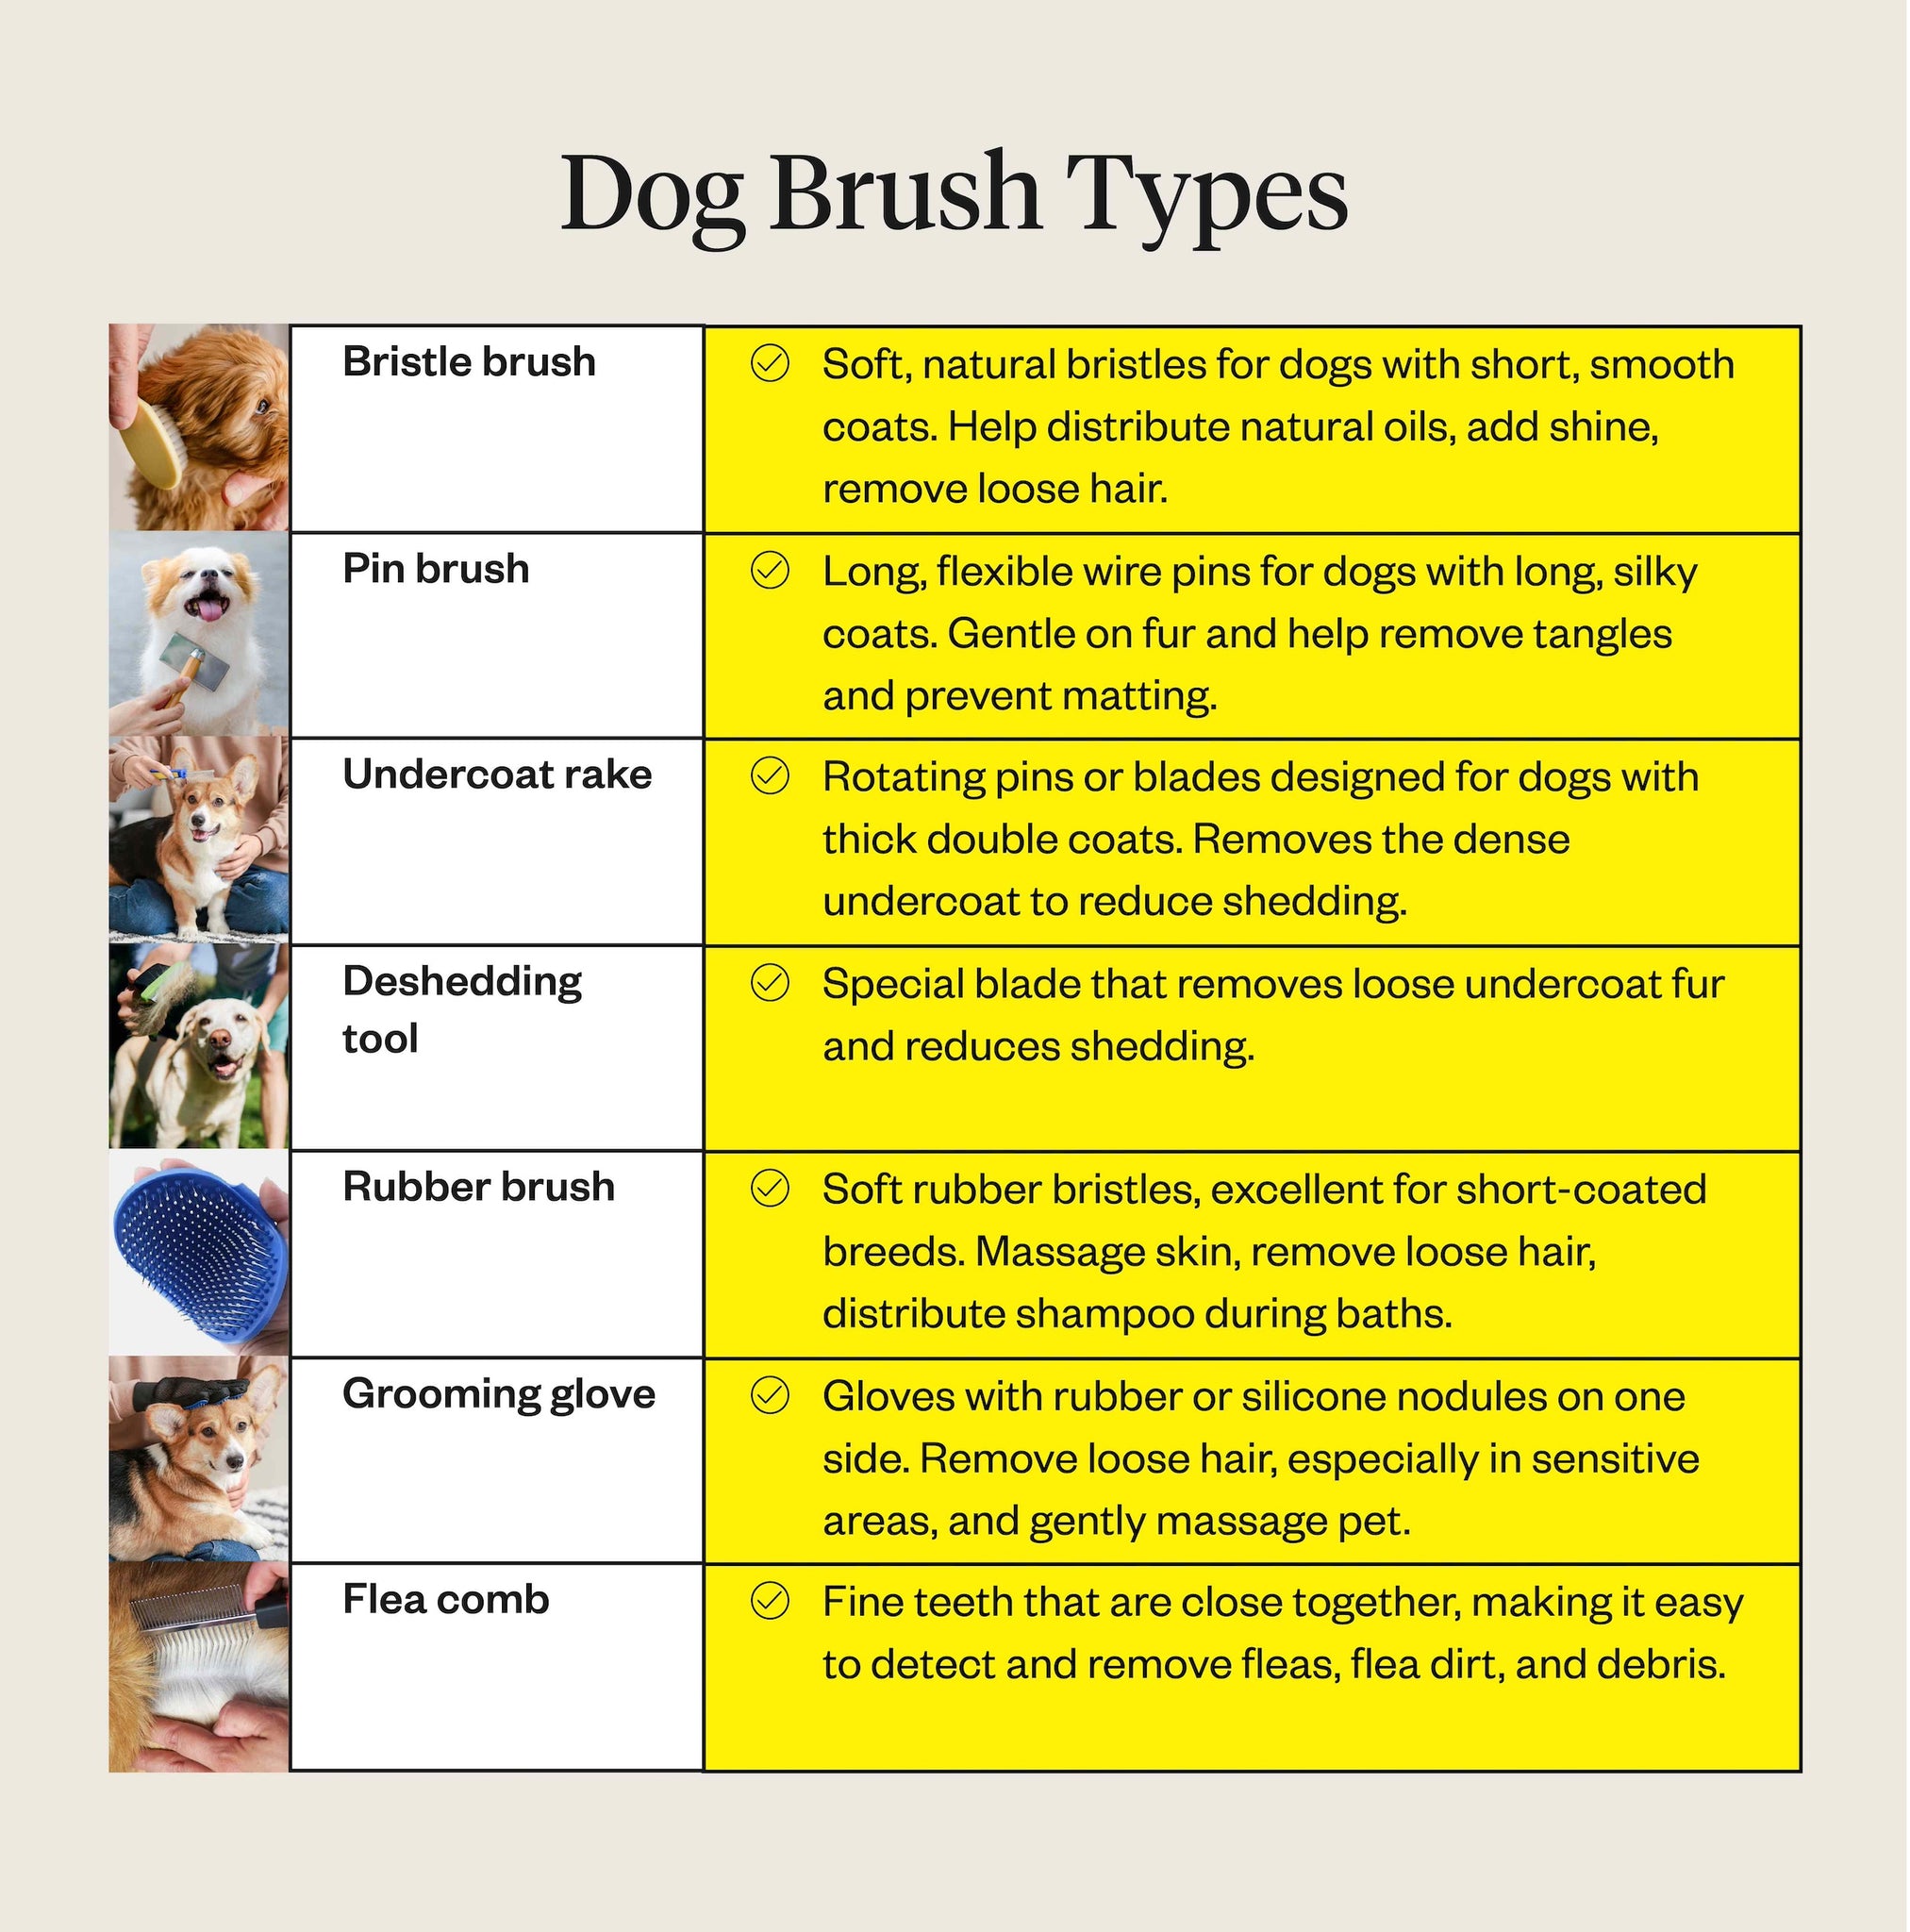 Types of dog brushes